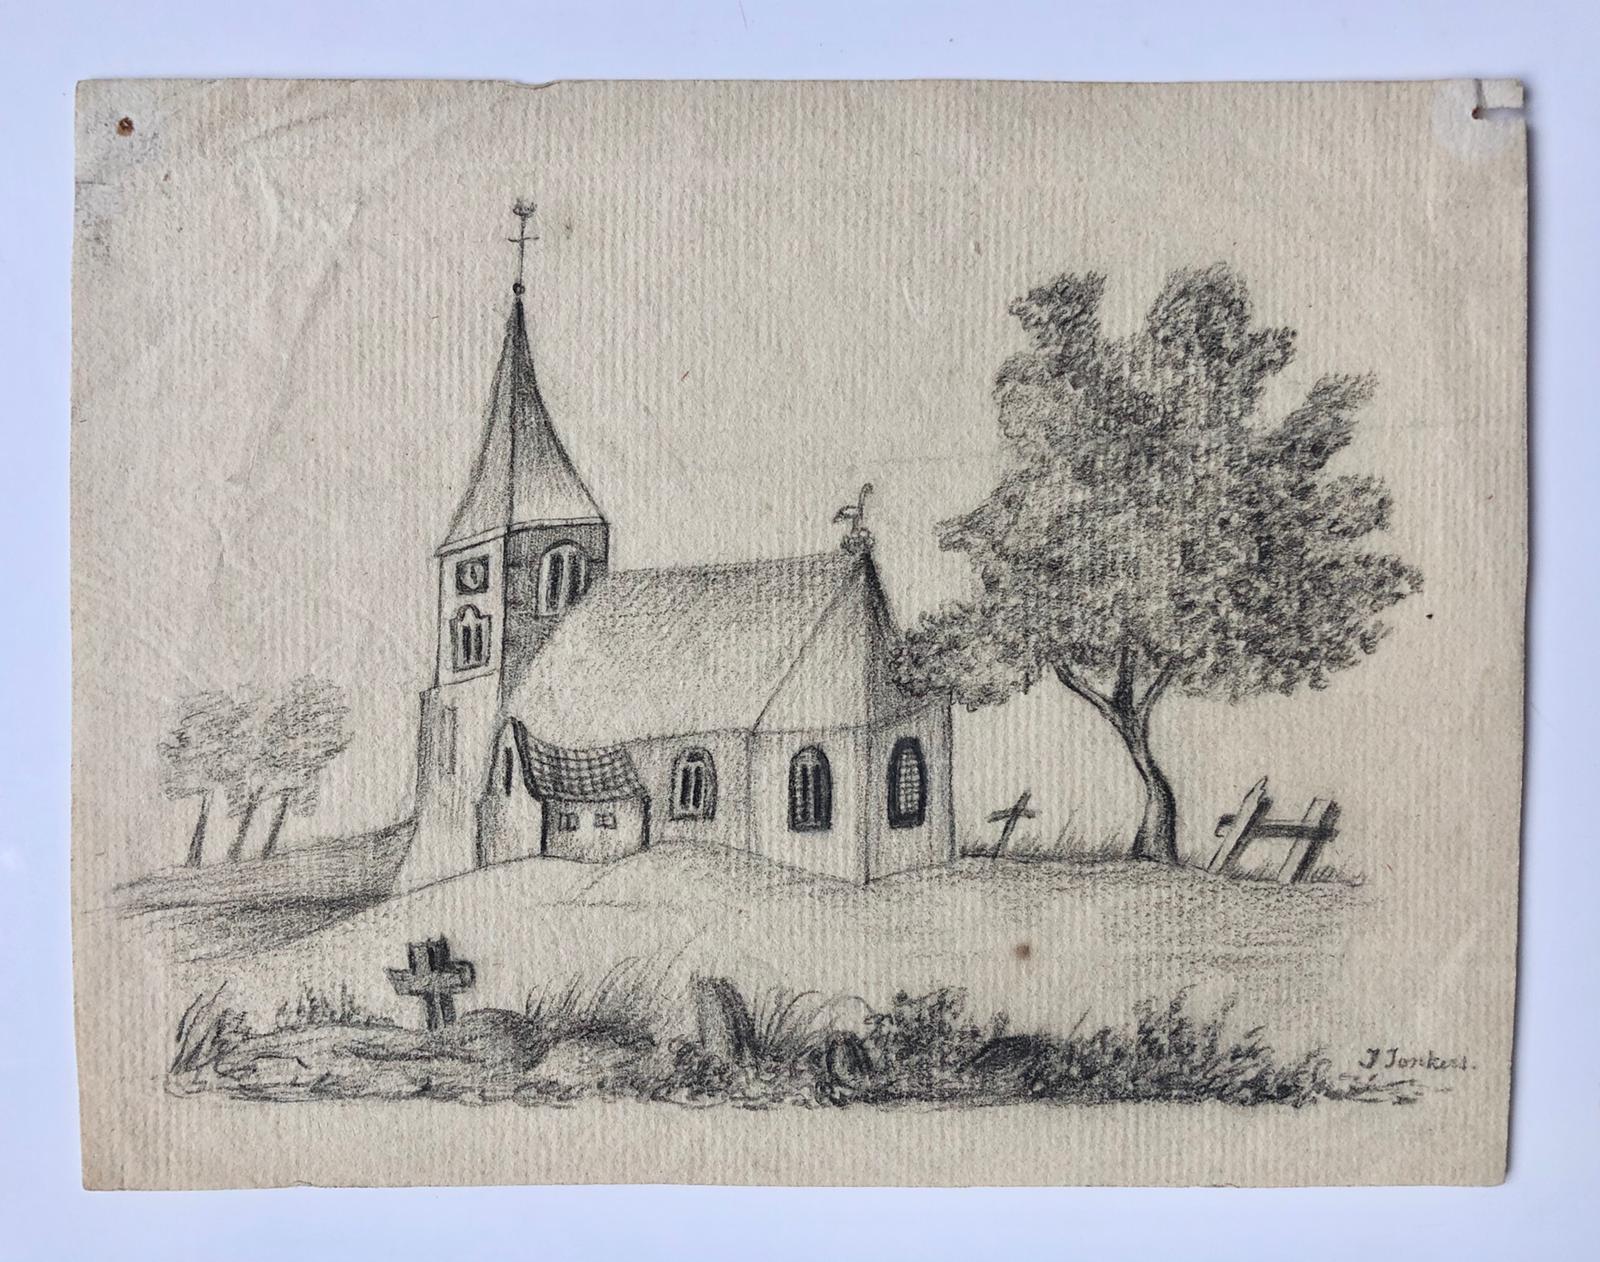  - [Drawing, 19th century] Wat naief potlood tekeningetje van een kerk, gesigneerd J. Jonkers, ca. A5, 19e- eeuws.